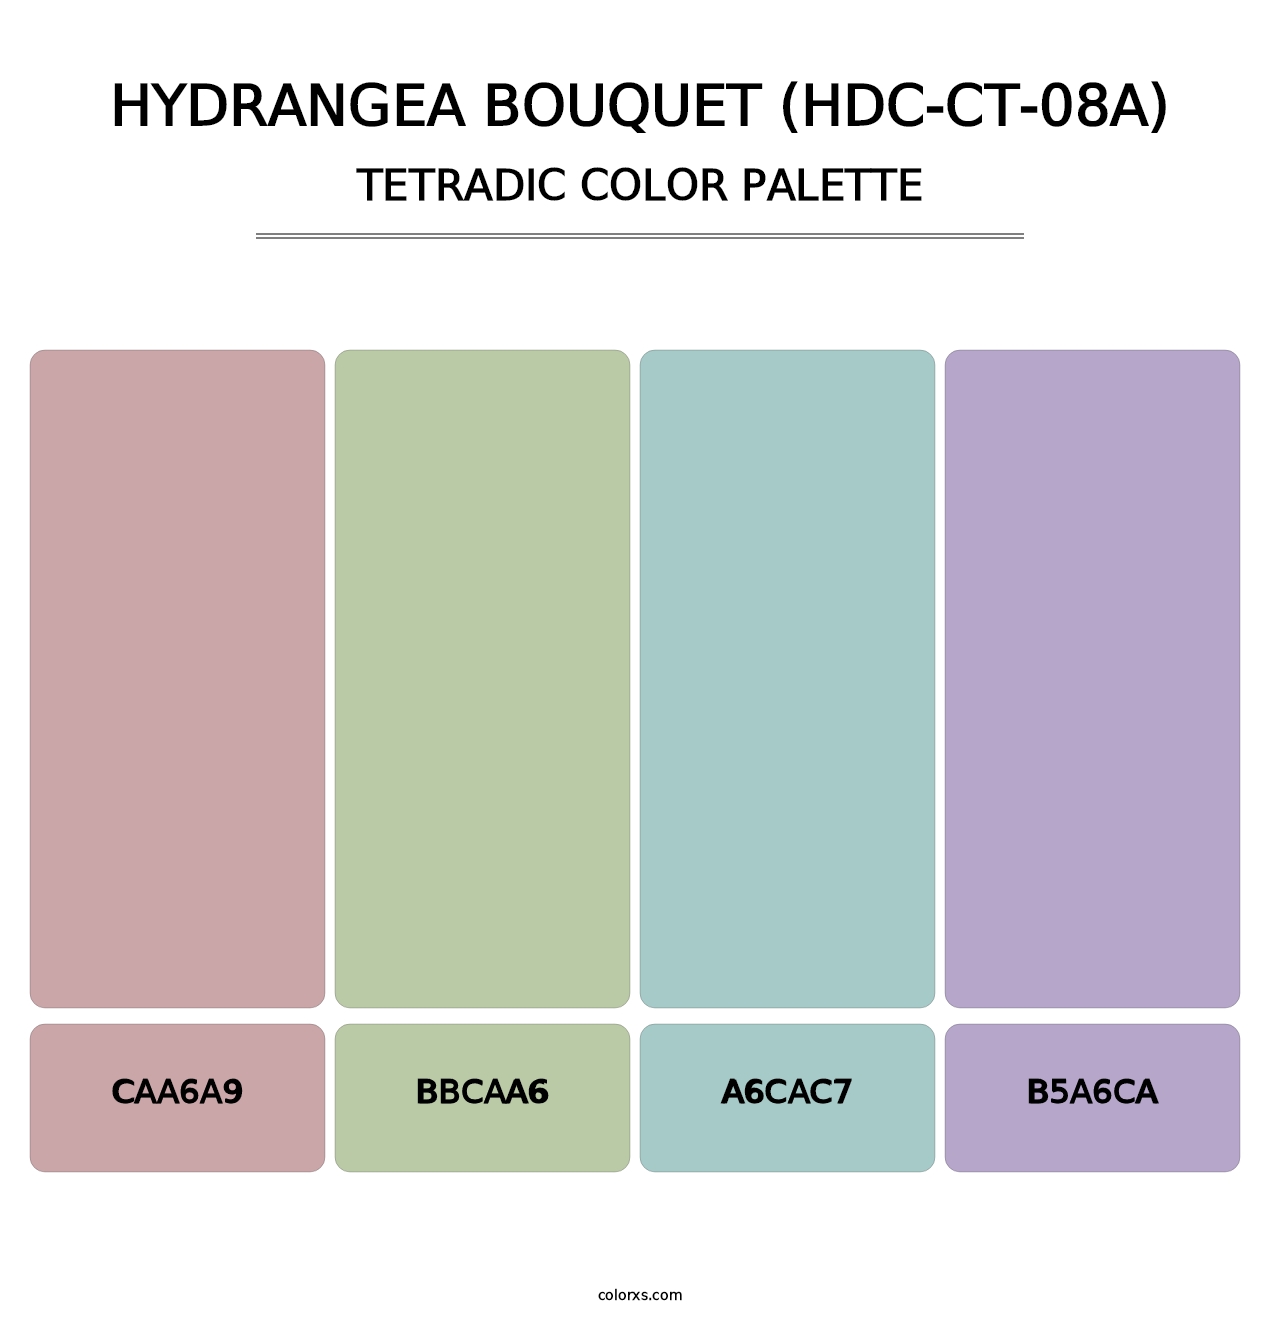 Hydrangea Bouquet (HDC-CT-08A) - Tetradic Color Palette